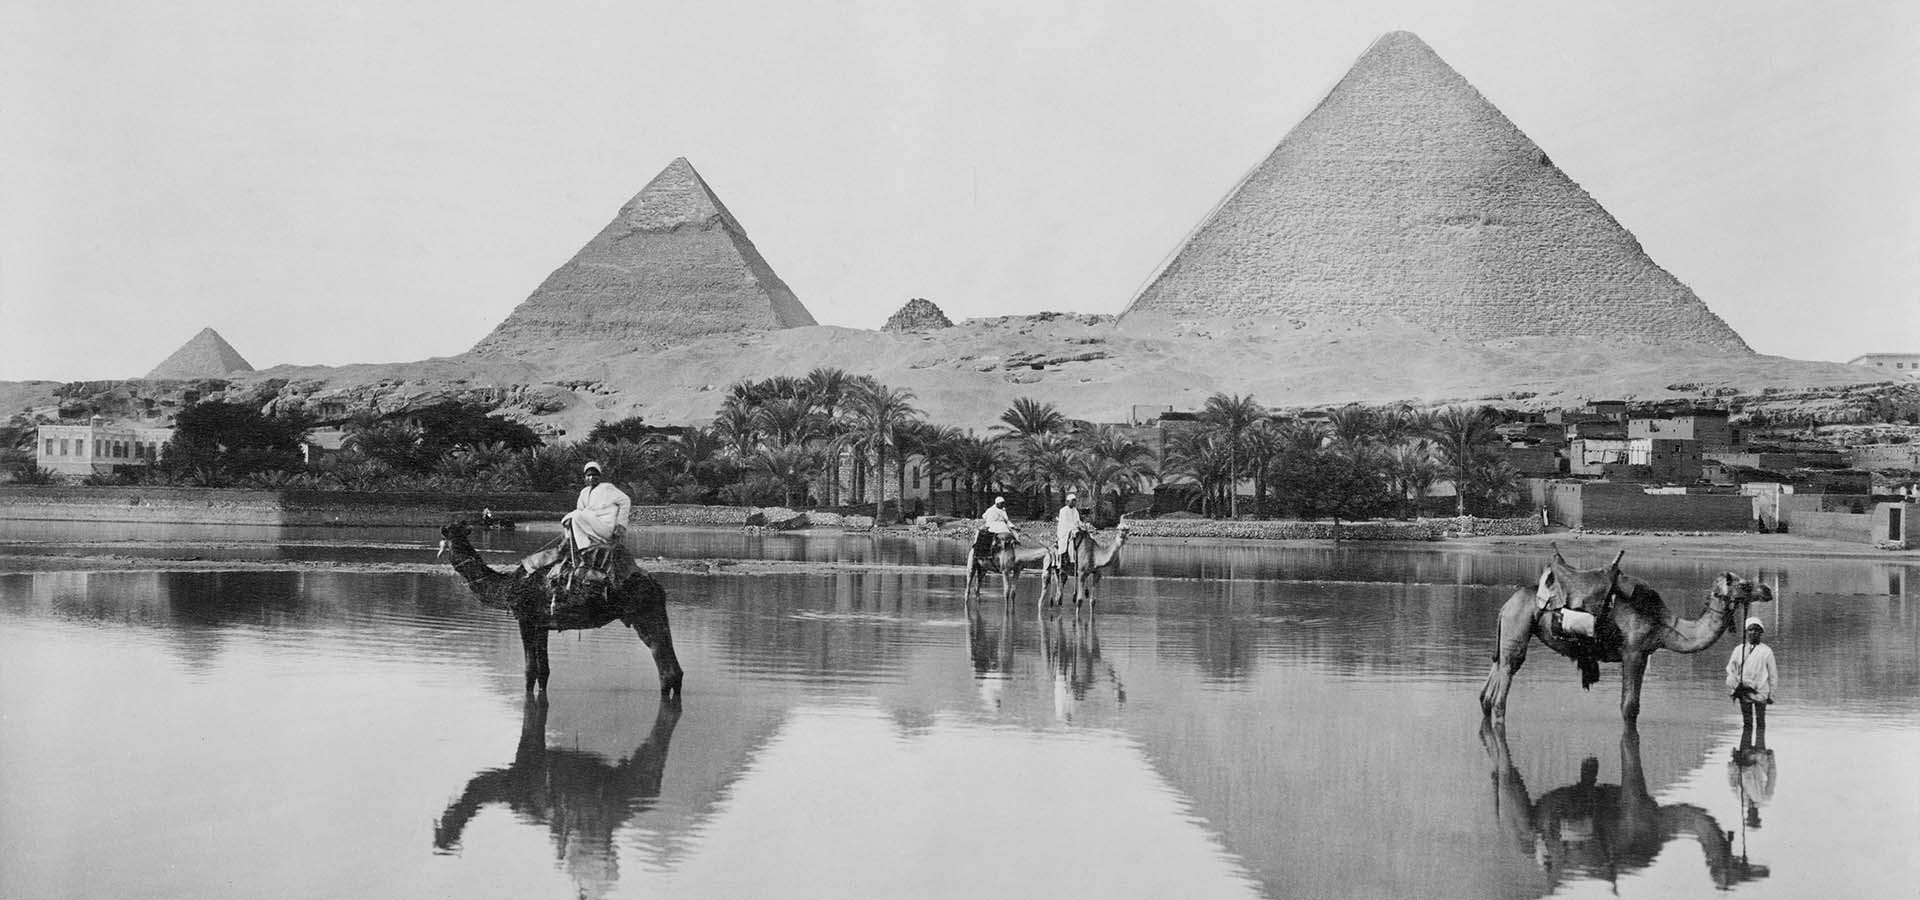 Männer und Kamele im flachen Hochwasser vor dem Hintergrund der Pyramiden, Ägypten, 1890.